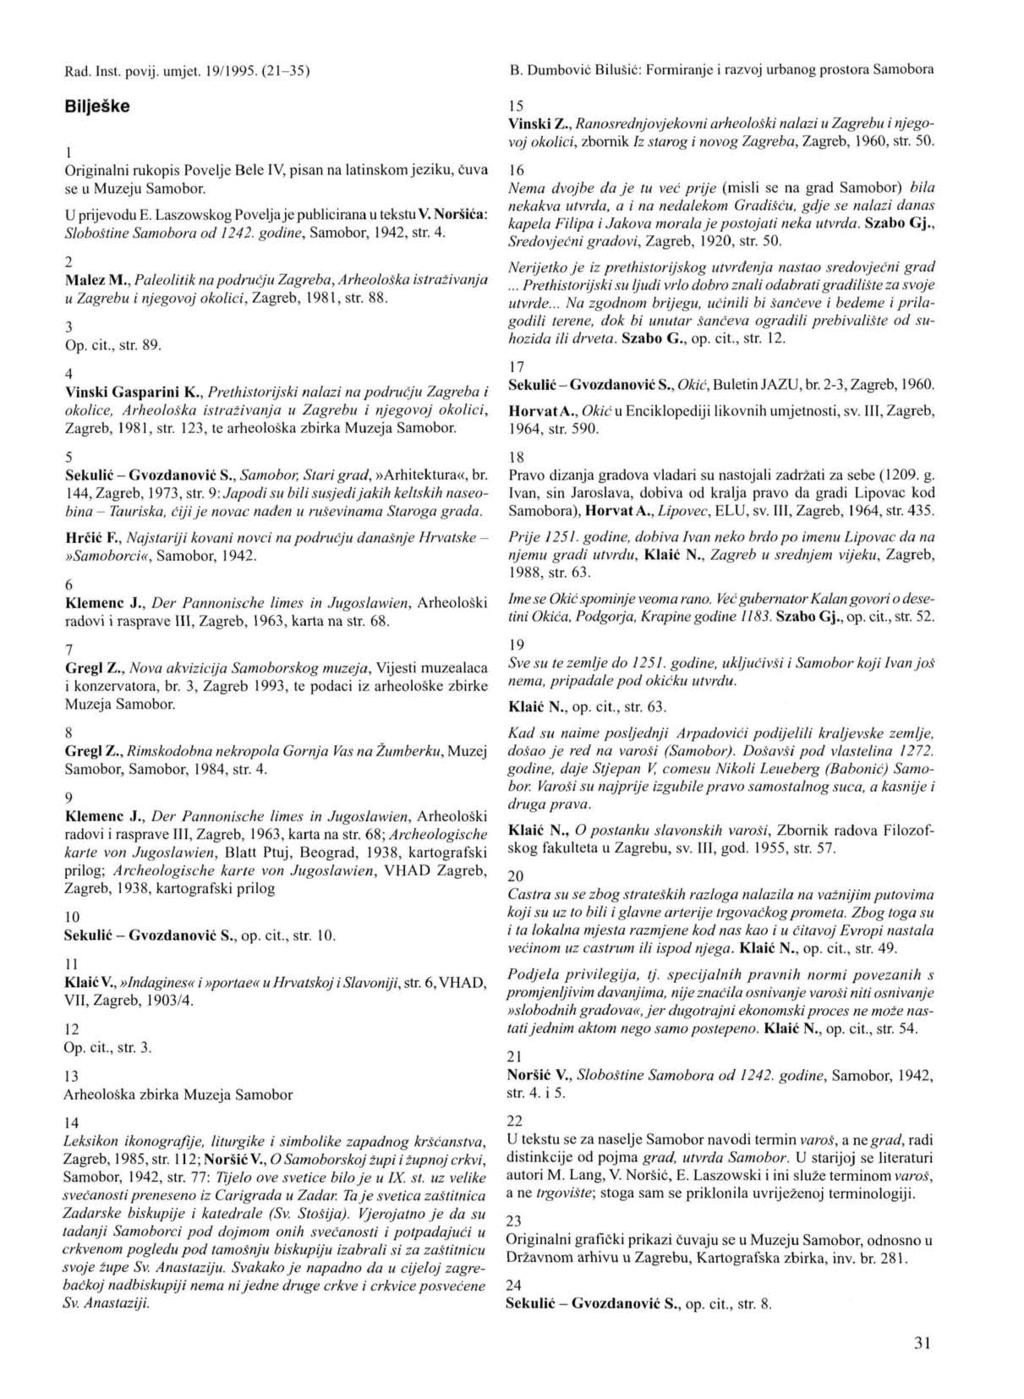 Bilješke 1 Originalni rukopis Povelje Bele IV, pisan na latinskom jeziku, čuva se u Muzeju Samobor. U prijevodu E. Laszowskog Povelja je publicirana u tekstu V. Noršića: Sloboštine Samobora od 1242.